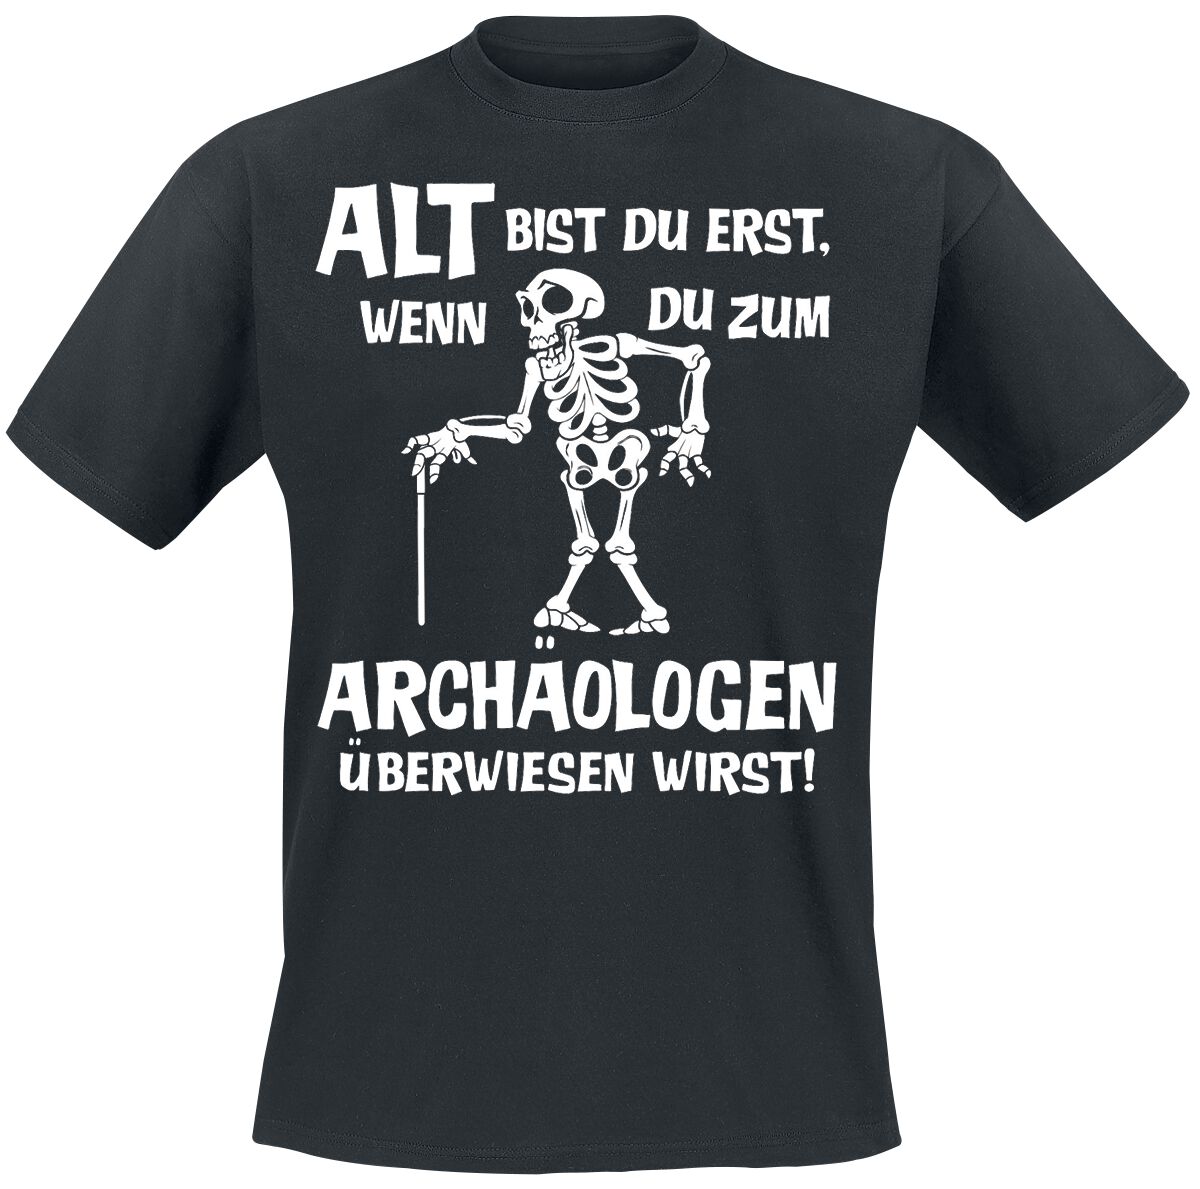 Sprüche T-Shirt - Alt bist du erst, wenn du zum Archäologen überwiesen wirst! - M bis 4XL - für Männer - Größe XXL - schwarz